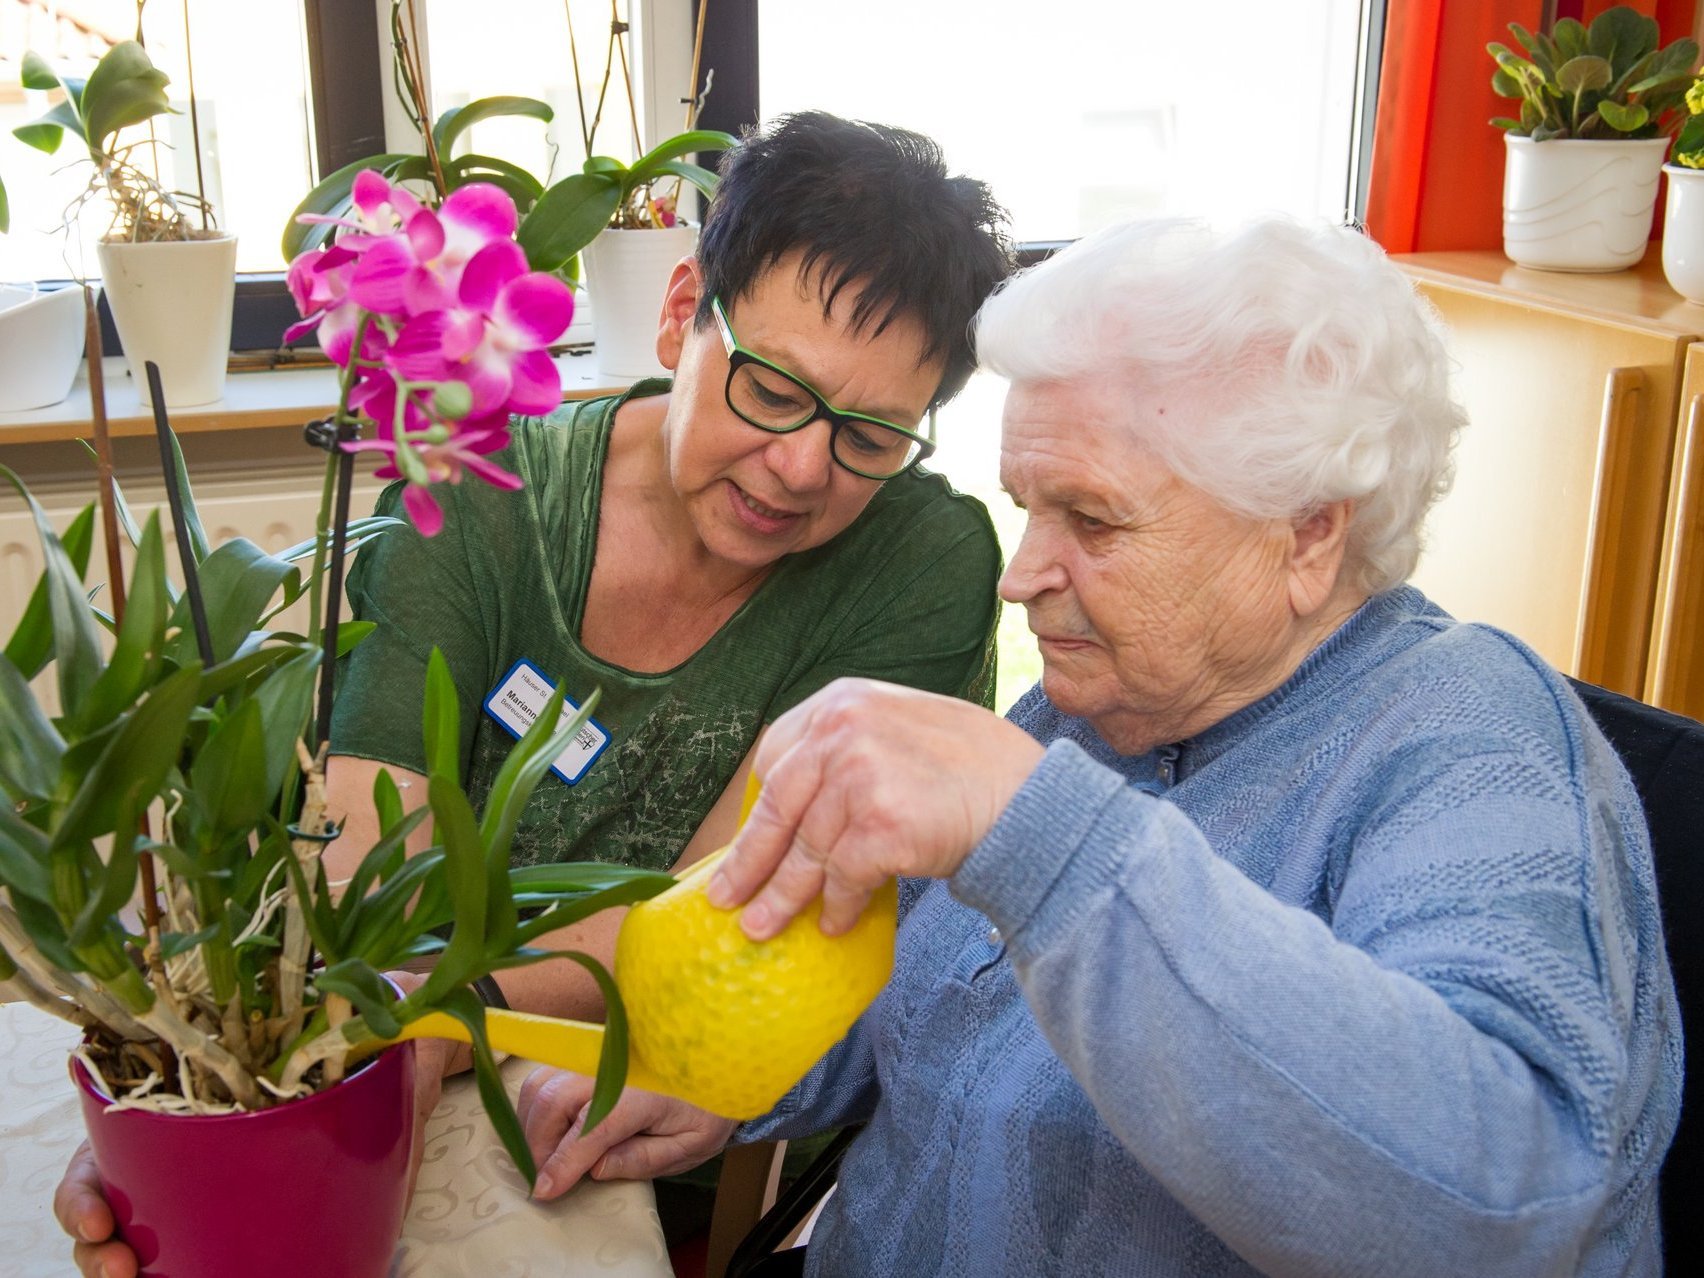 Eine Mitarbeiterin hilf einer Heimbewohnerin beim Blumengießen mit einer gelben Gießkanne.